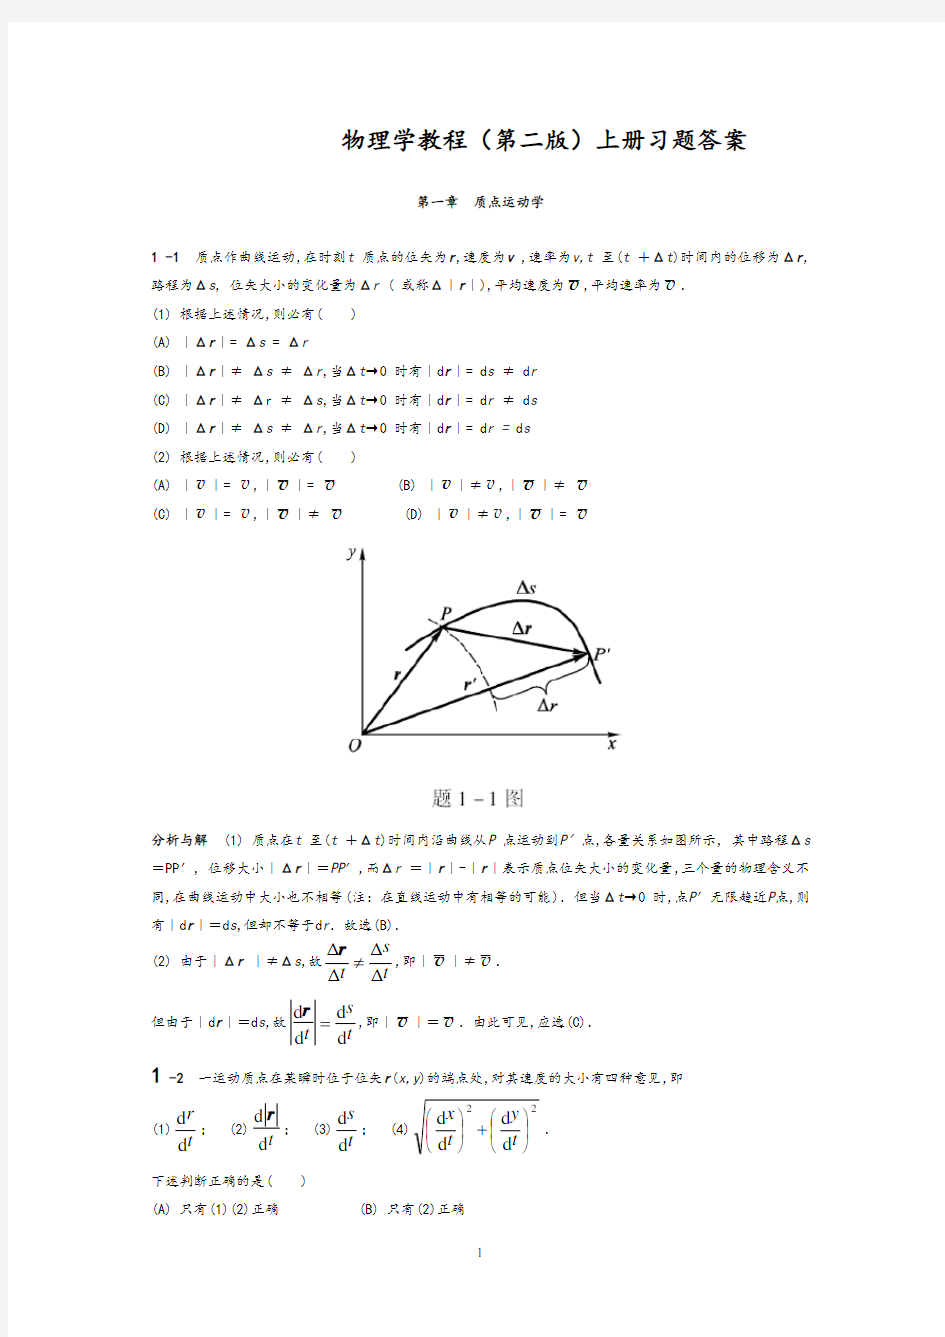 物理学教程(第二版)上册课后习题答案详解(1-5章)